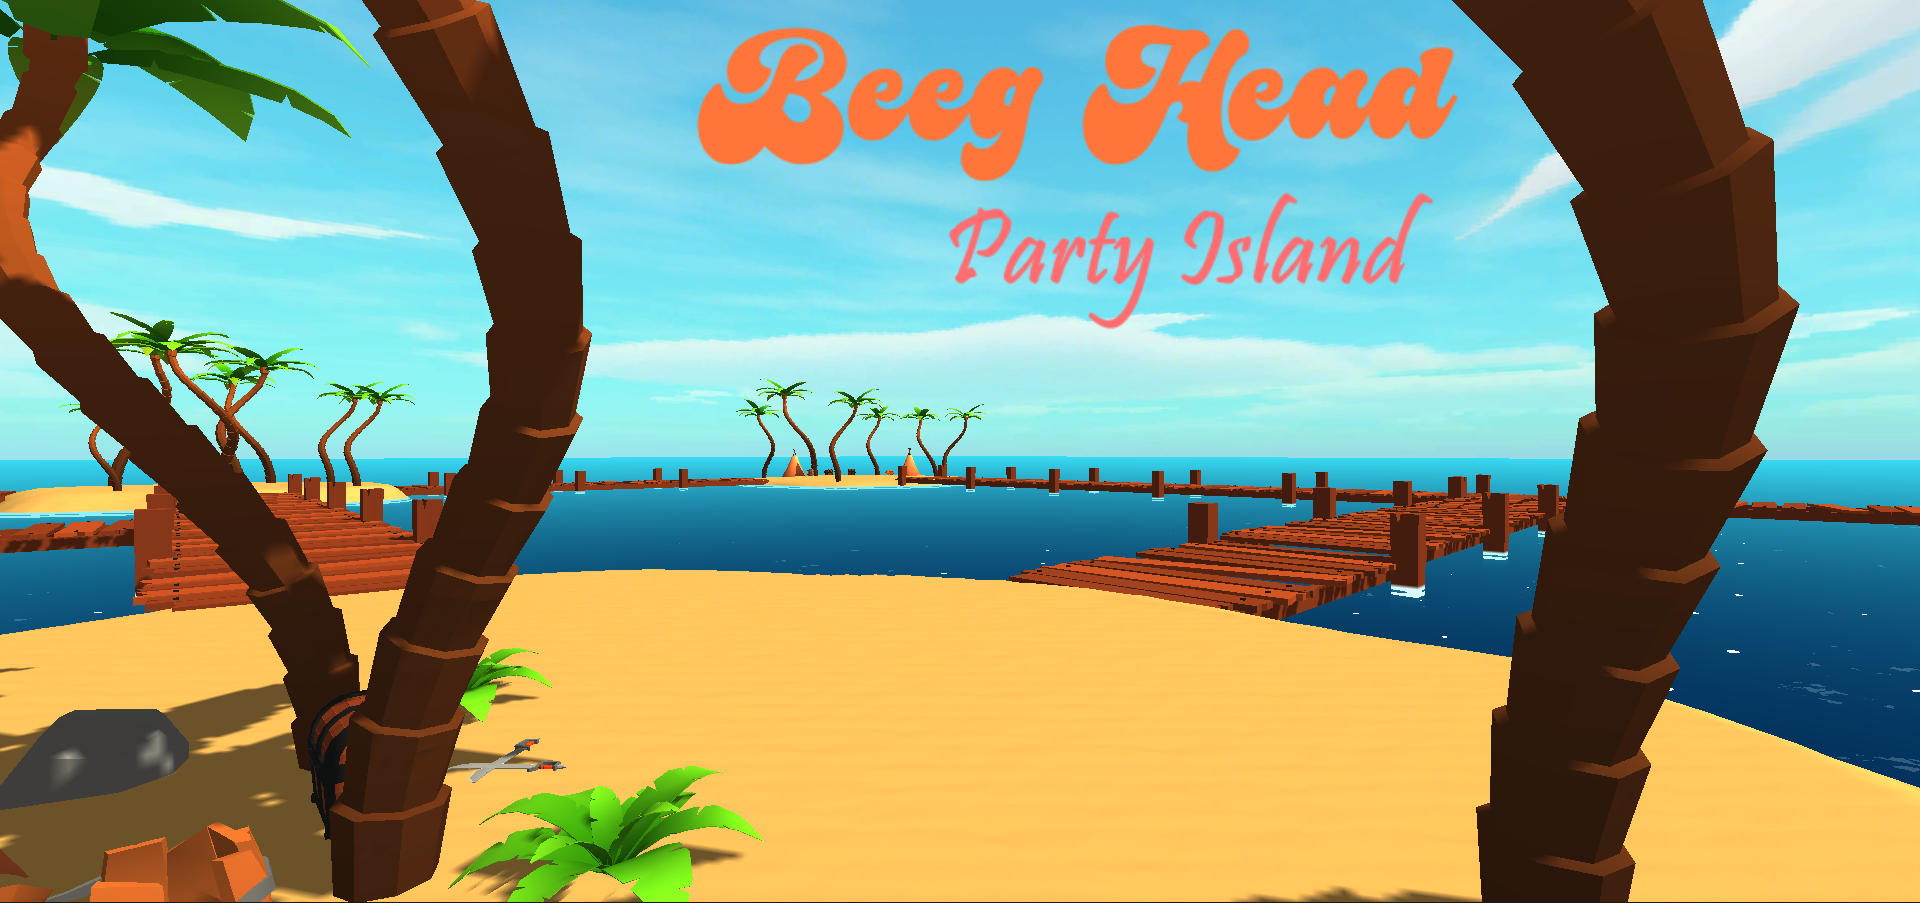 Beeg Head Party Island